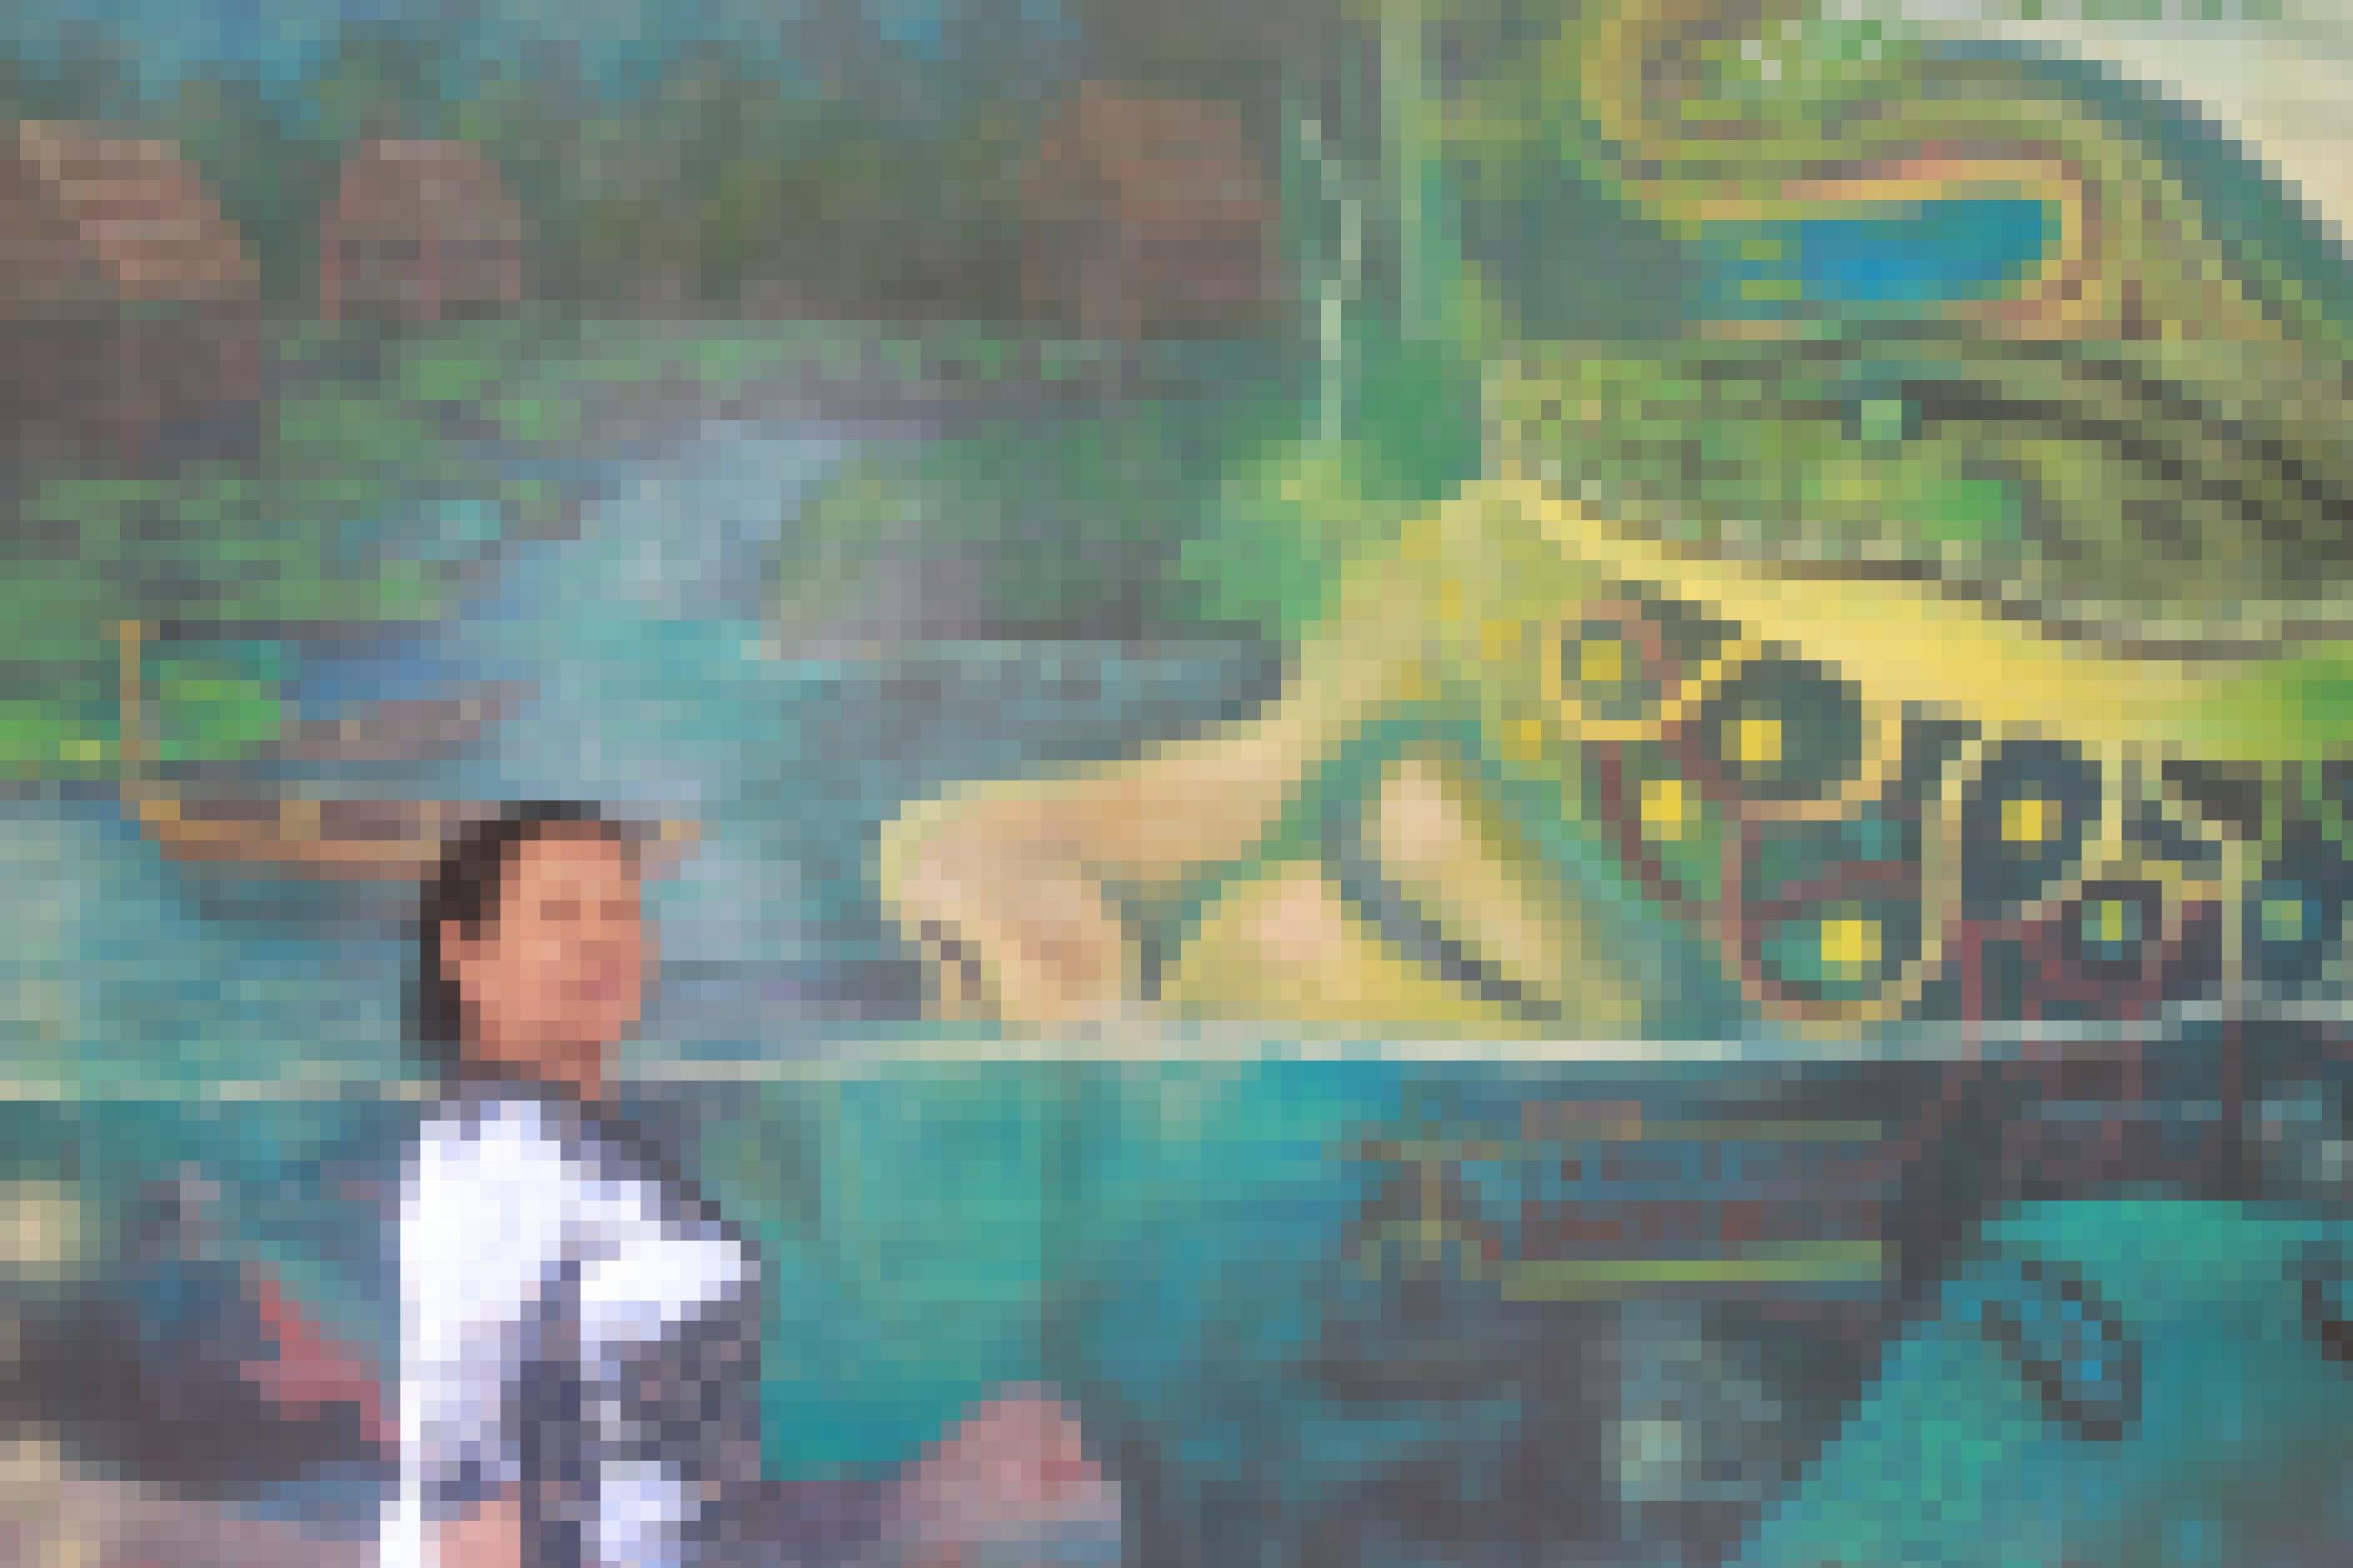 Ein buntes Wandgemälde zeigt eine halb im Wasser liegende Frau, auf deren Kopf sich eine Boa ringelt. Links am Bildrand betrachtet eine alte Frau das Bild.